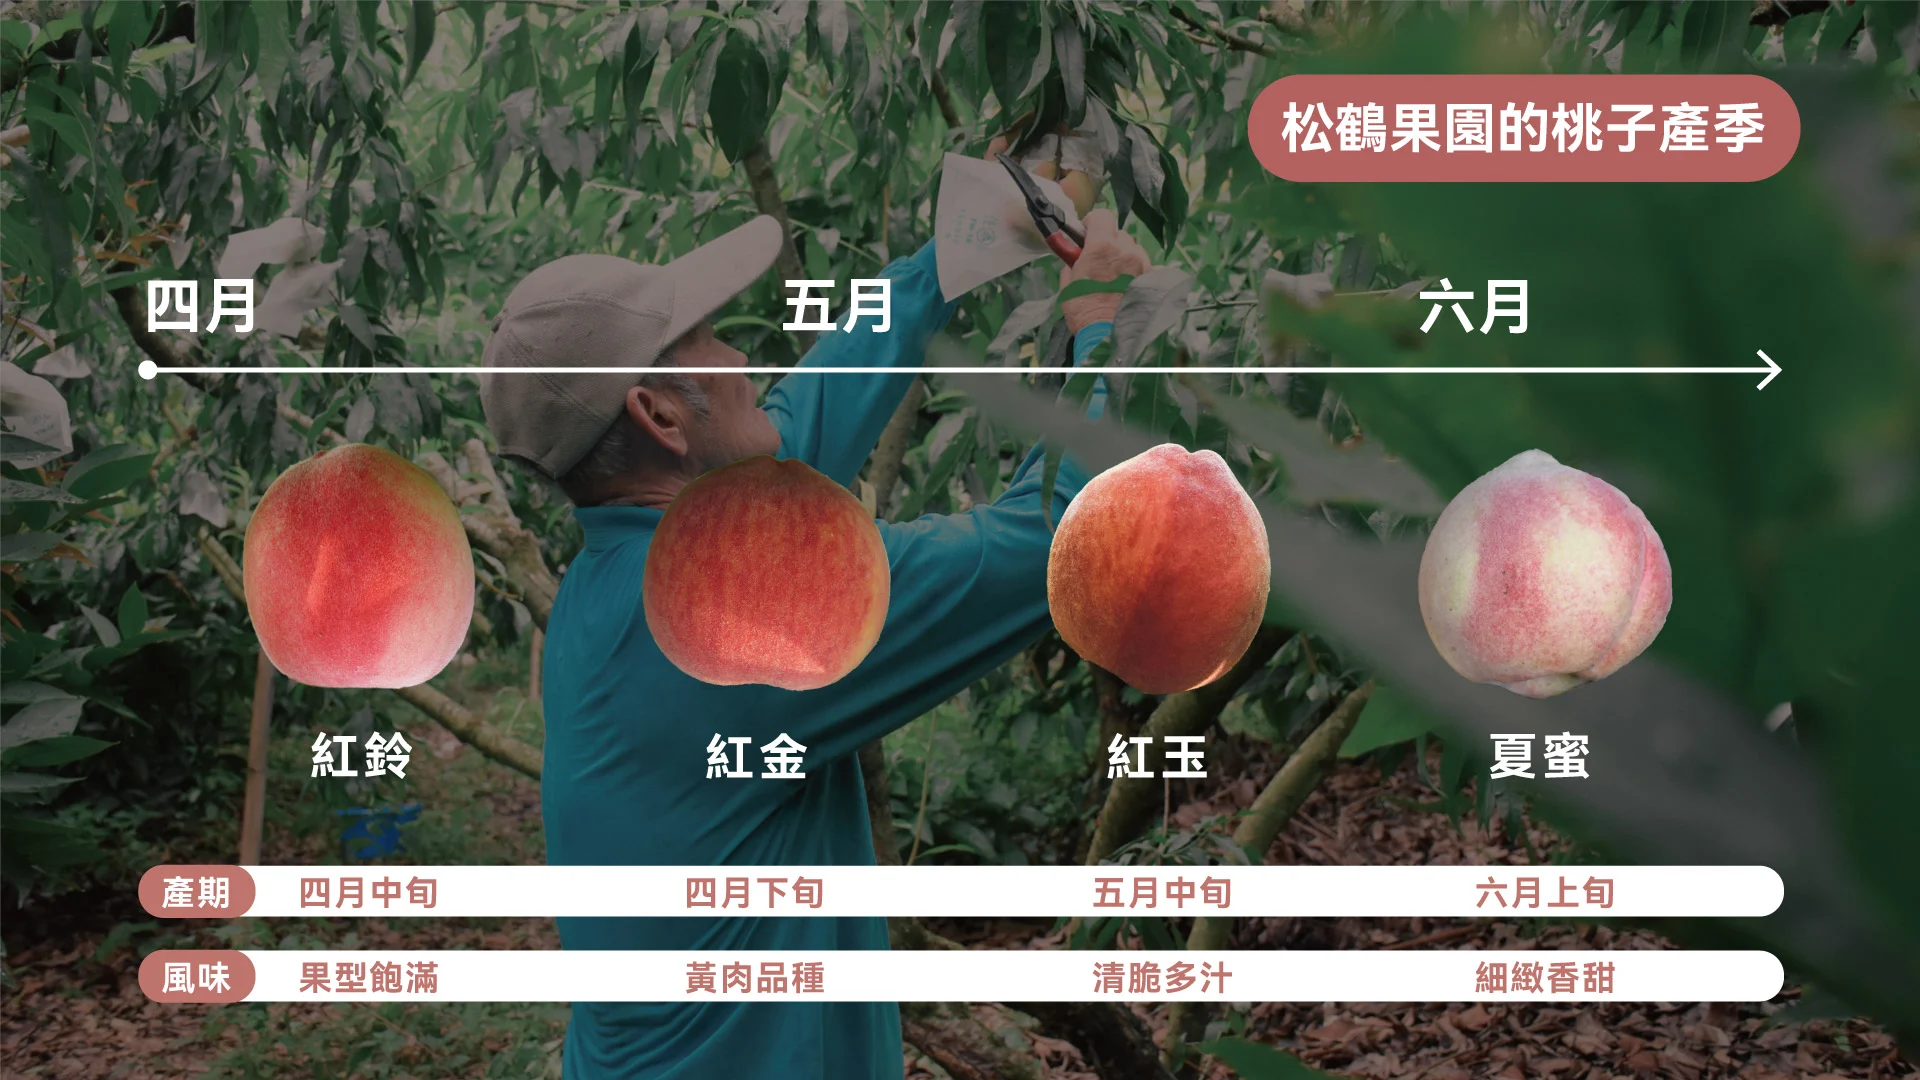 桃品種產季